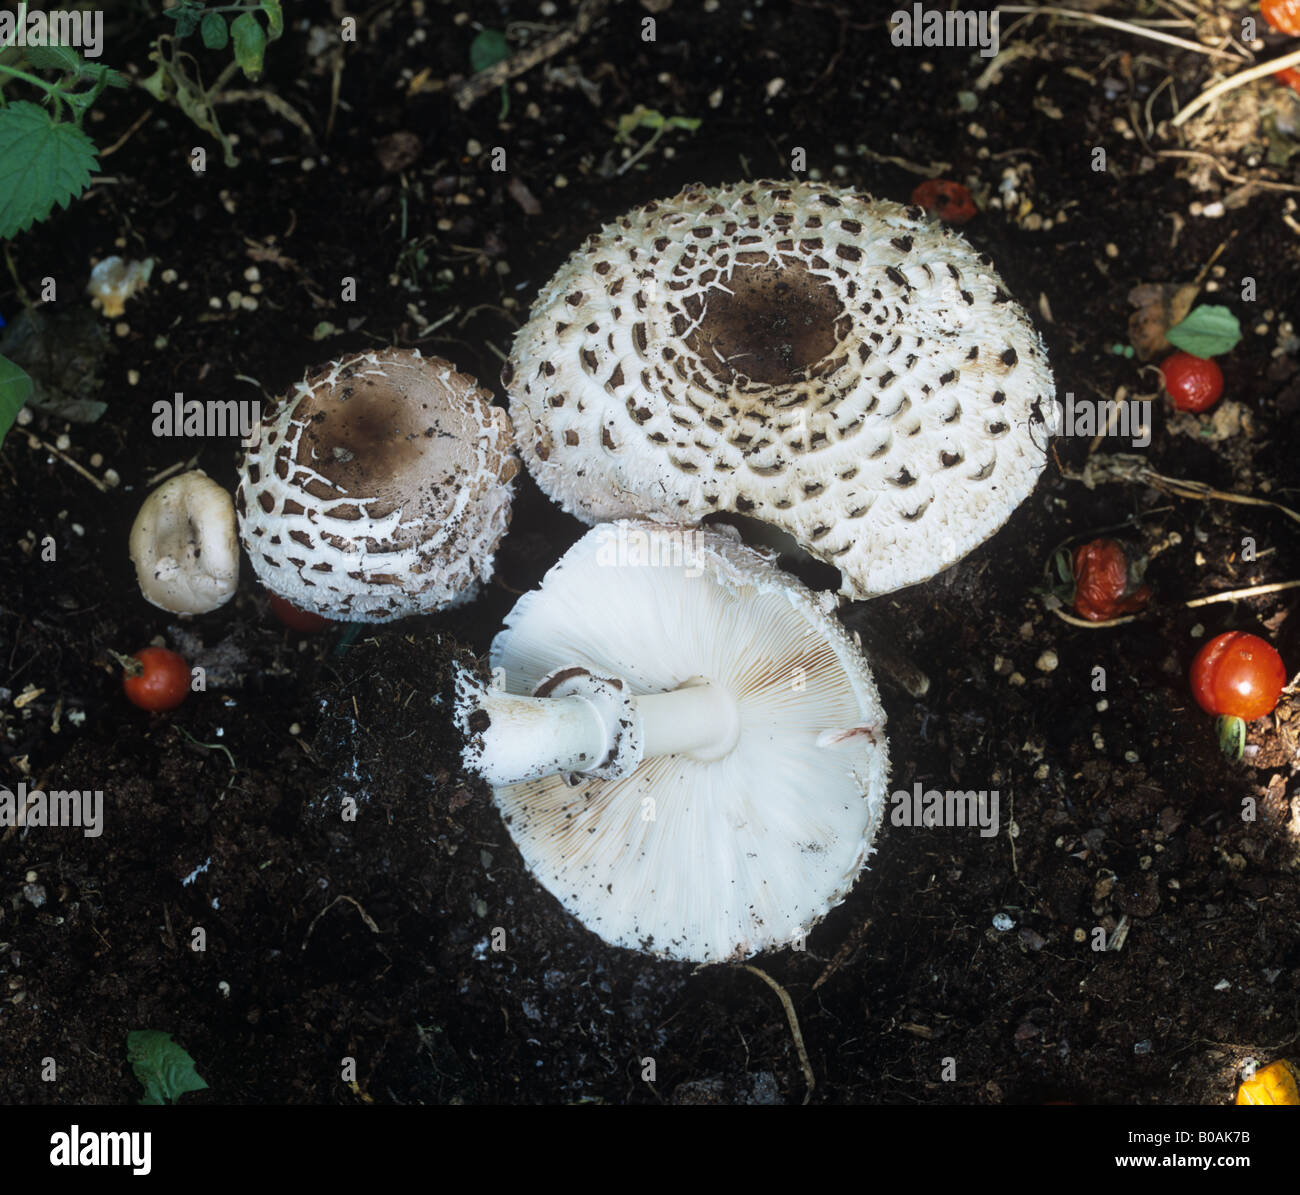 Shaggy sombrilla seta Lepiota rhacodes Bohemica fructificación de hongos tapas en invernaderos abono Foto de stock